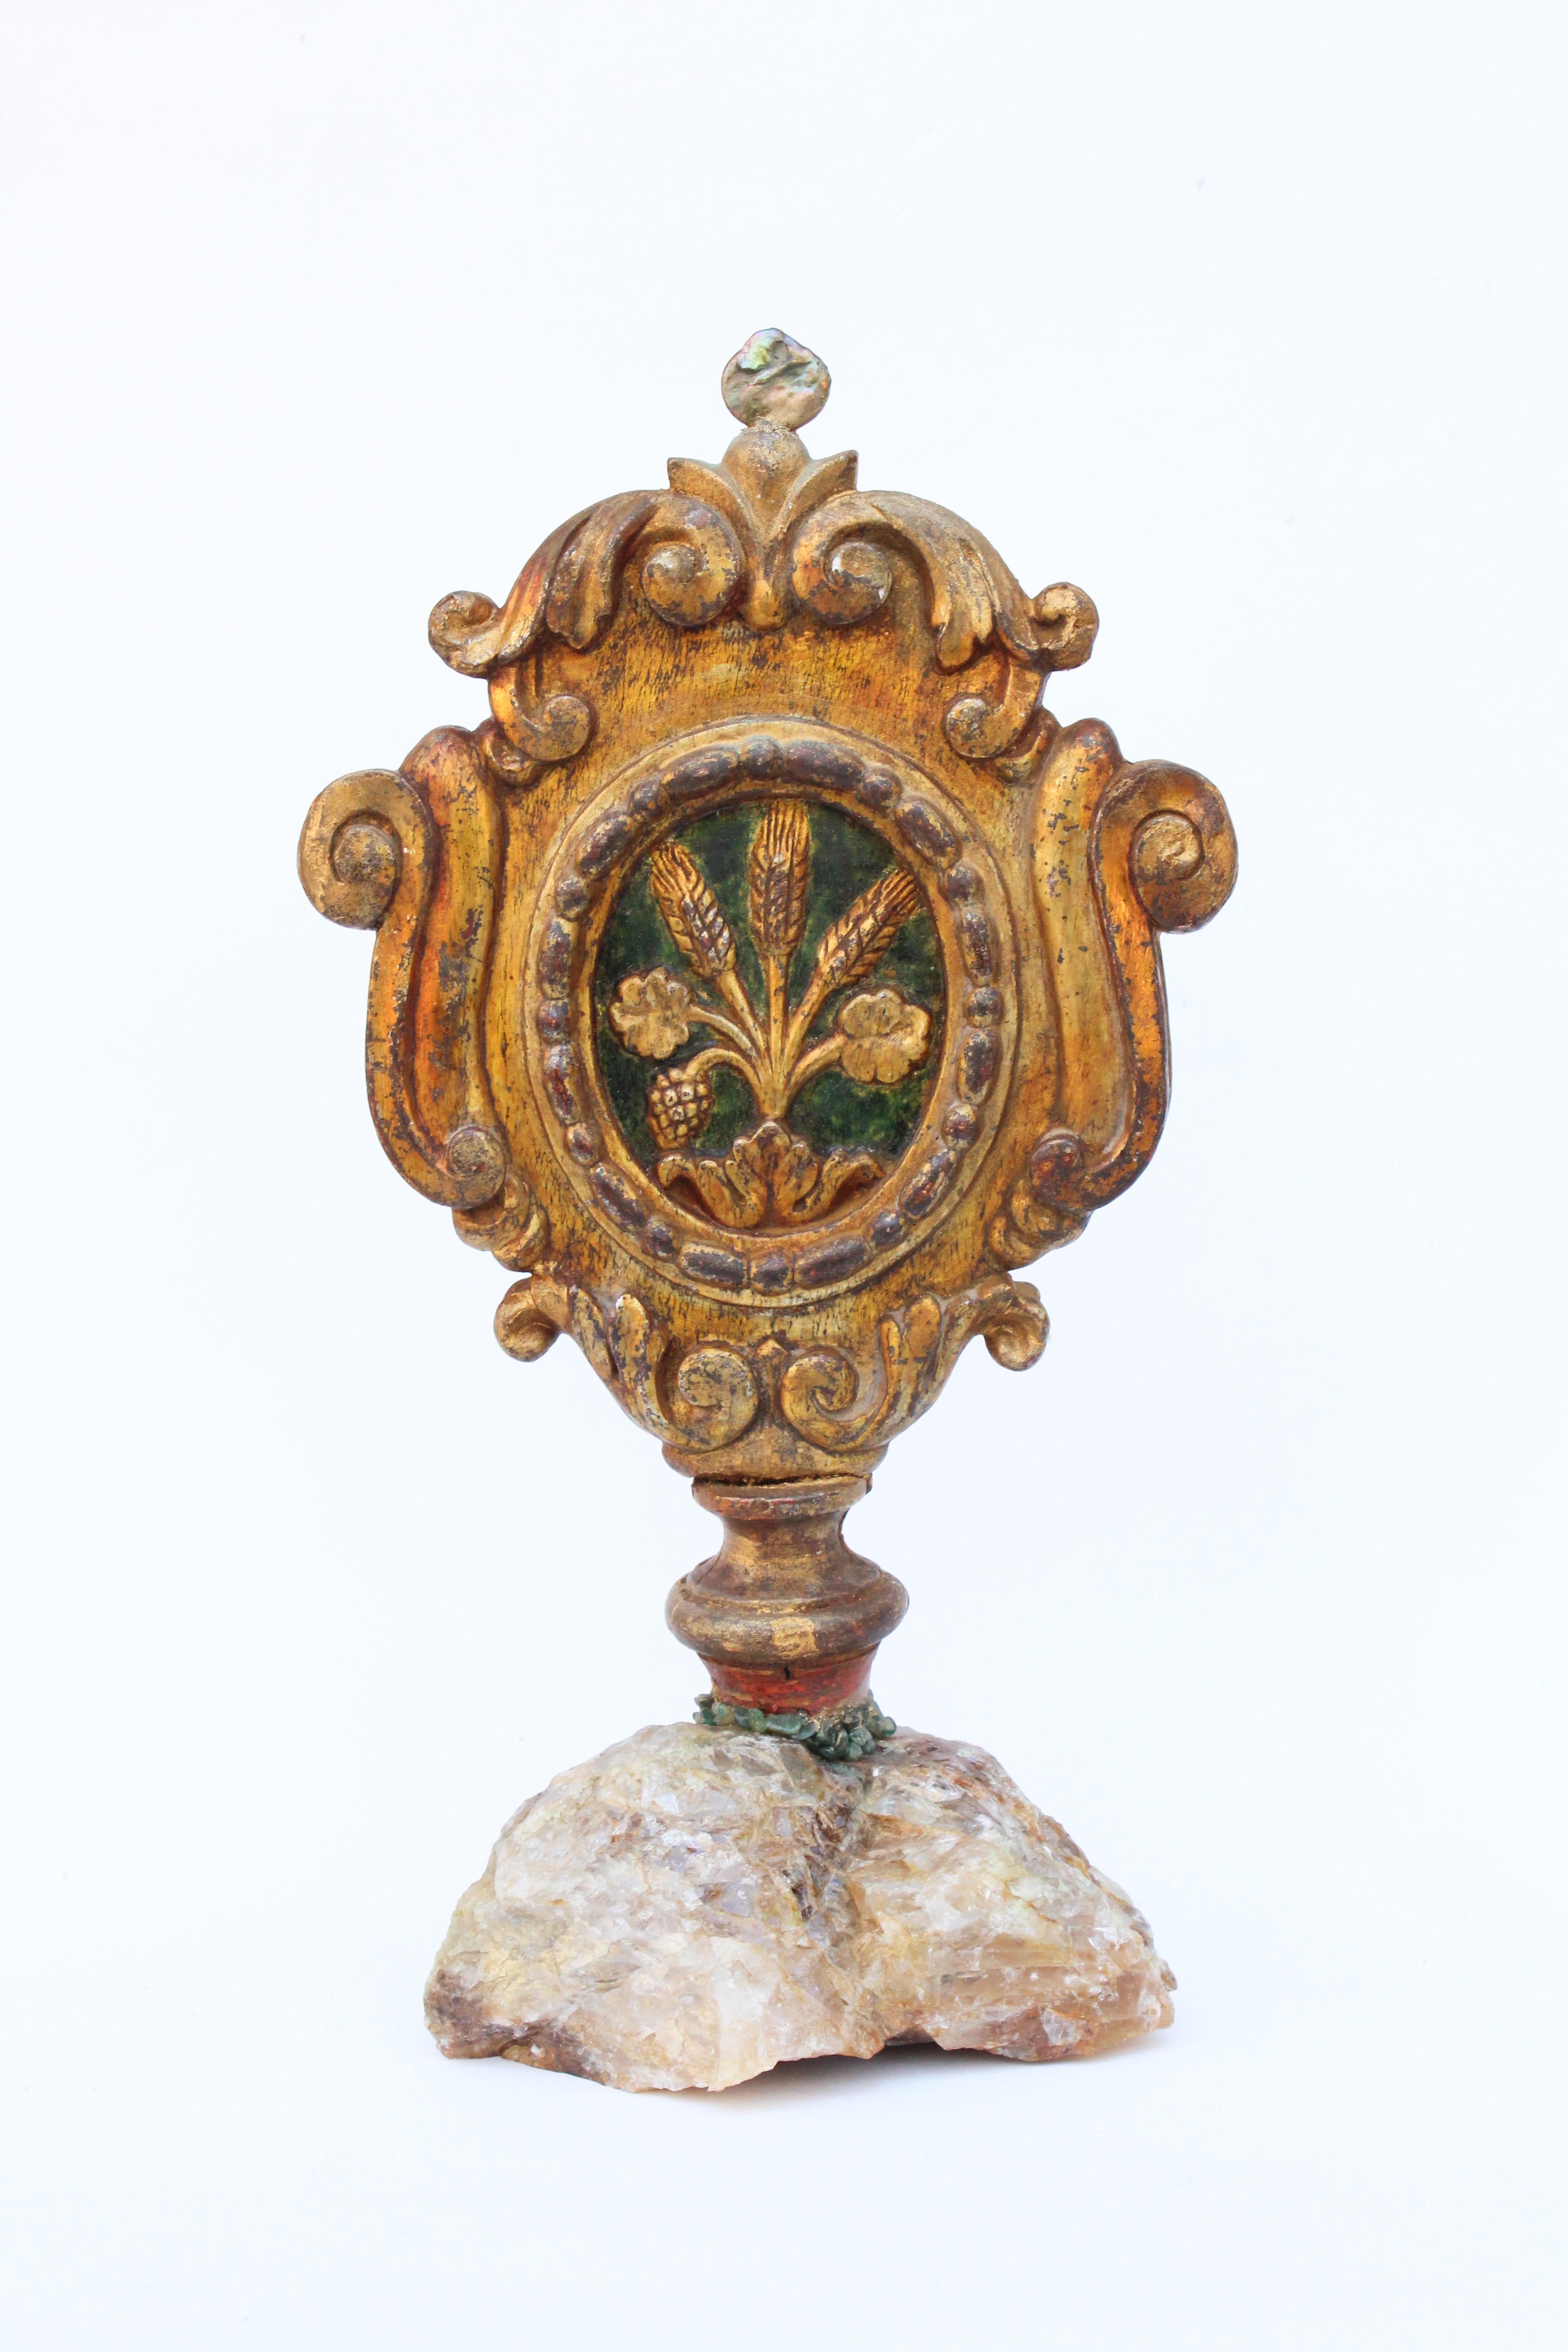 Italienisches vergoldetes und handbemaltes Prozessionskreuz aus dem 18. Jahrhundert mit Barockperlen und Adventurin, montiert auf Honigcalcit. Das Stück war ursprünglich Teil einer Prozessionsstange aus einer historischen Kirche in Italien. Auf der